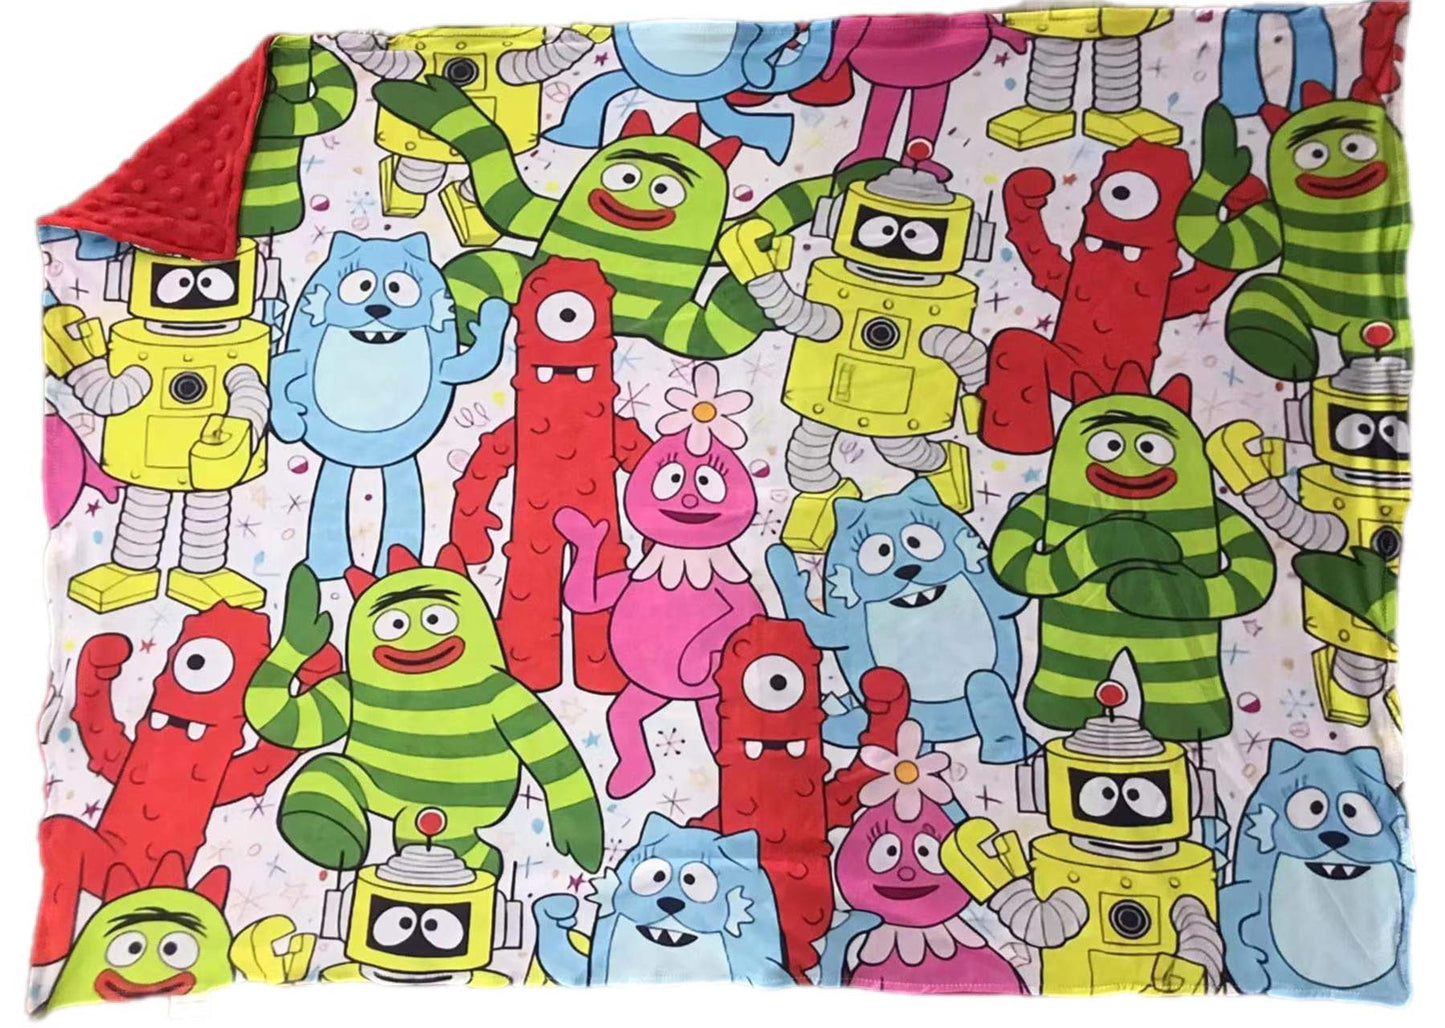 ᴡᴇᴇᴋʟʏ ᴘʀᴇ ᴏʀᴅᴇʀ Blanket- Monsters and Bots 30x40"